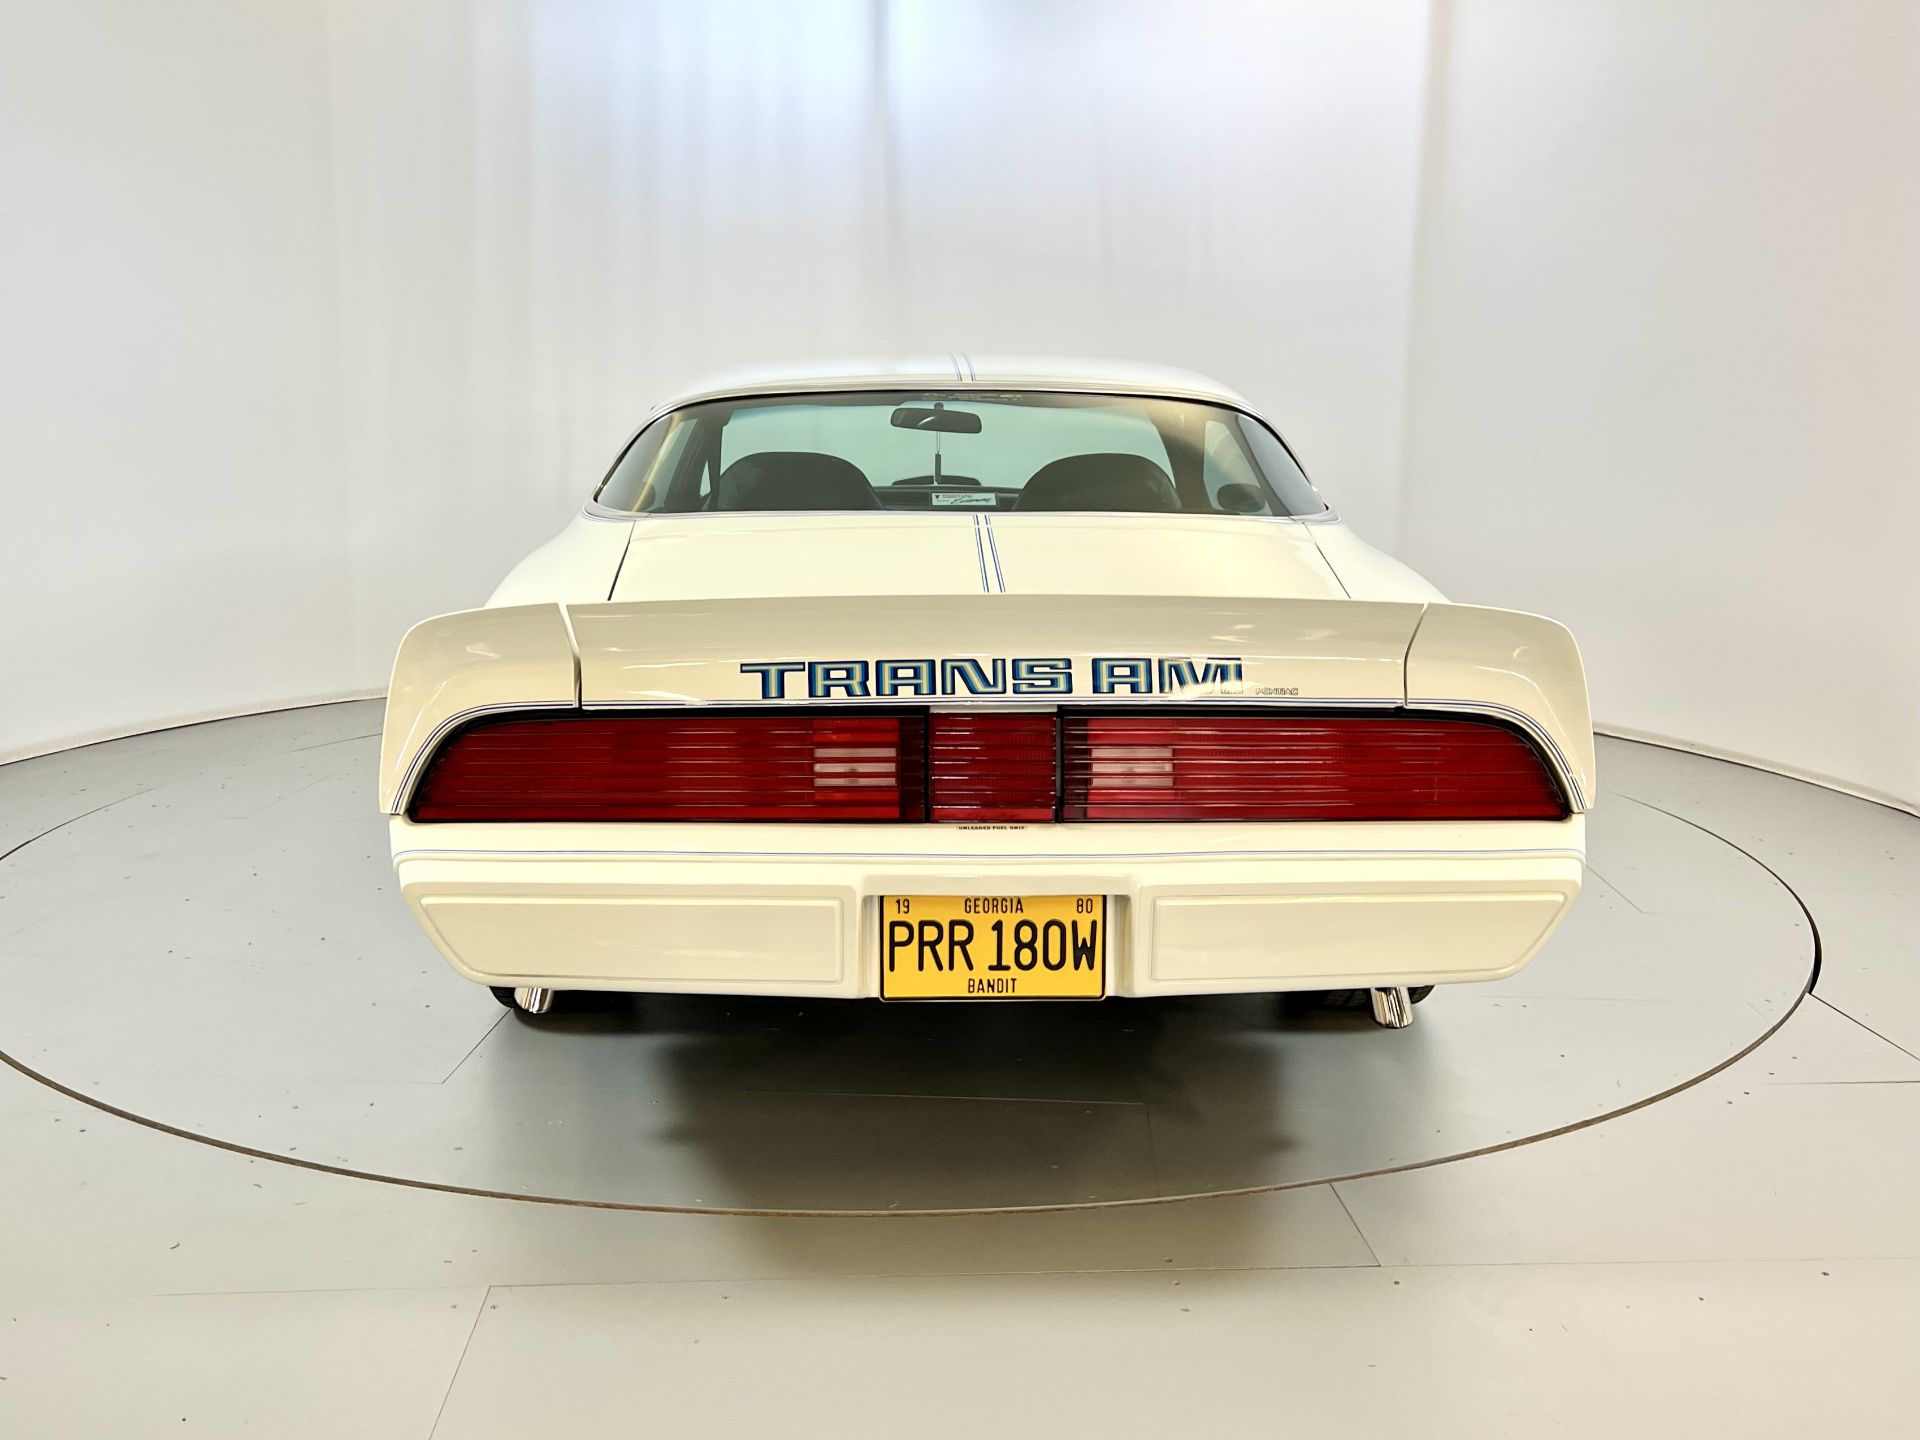 Pontiac Firebird - Trans Am Tribute - Image 8 of 31